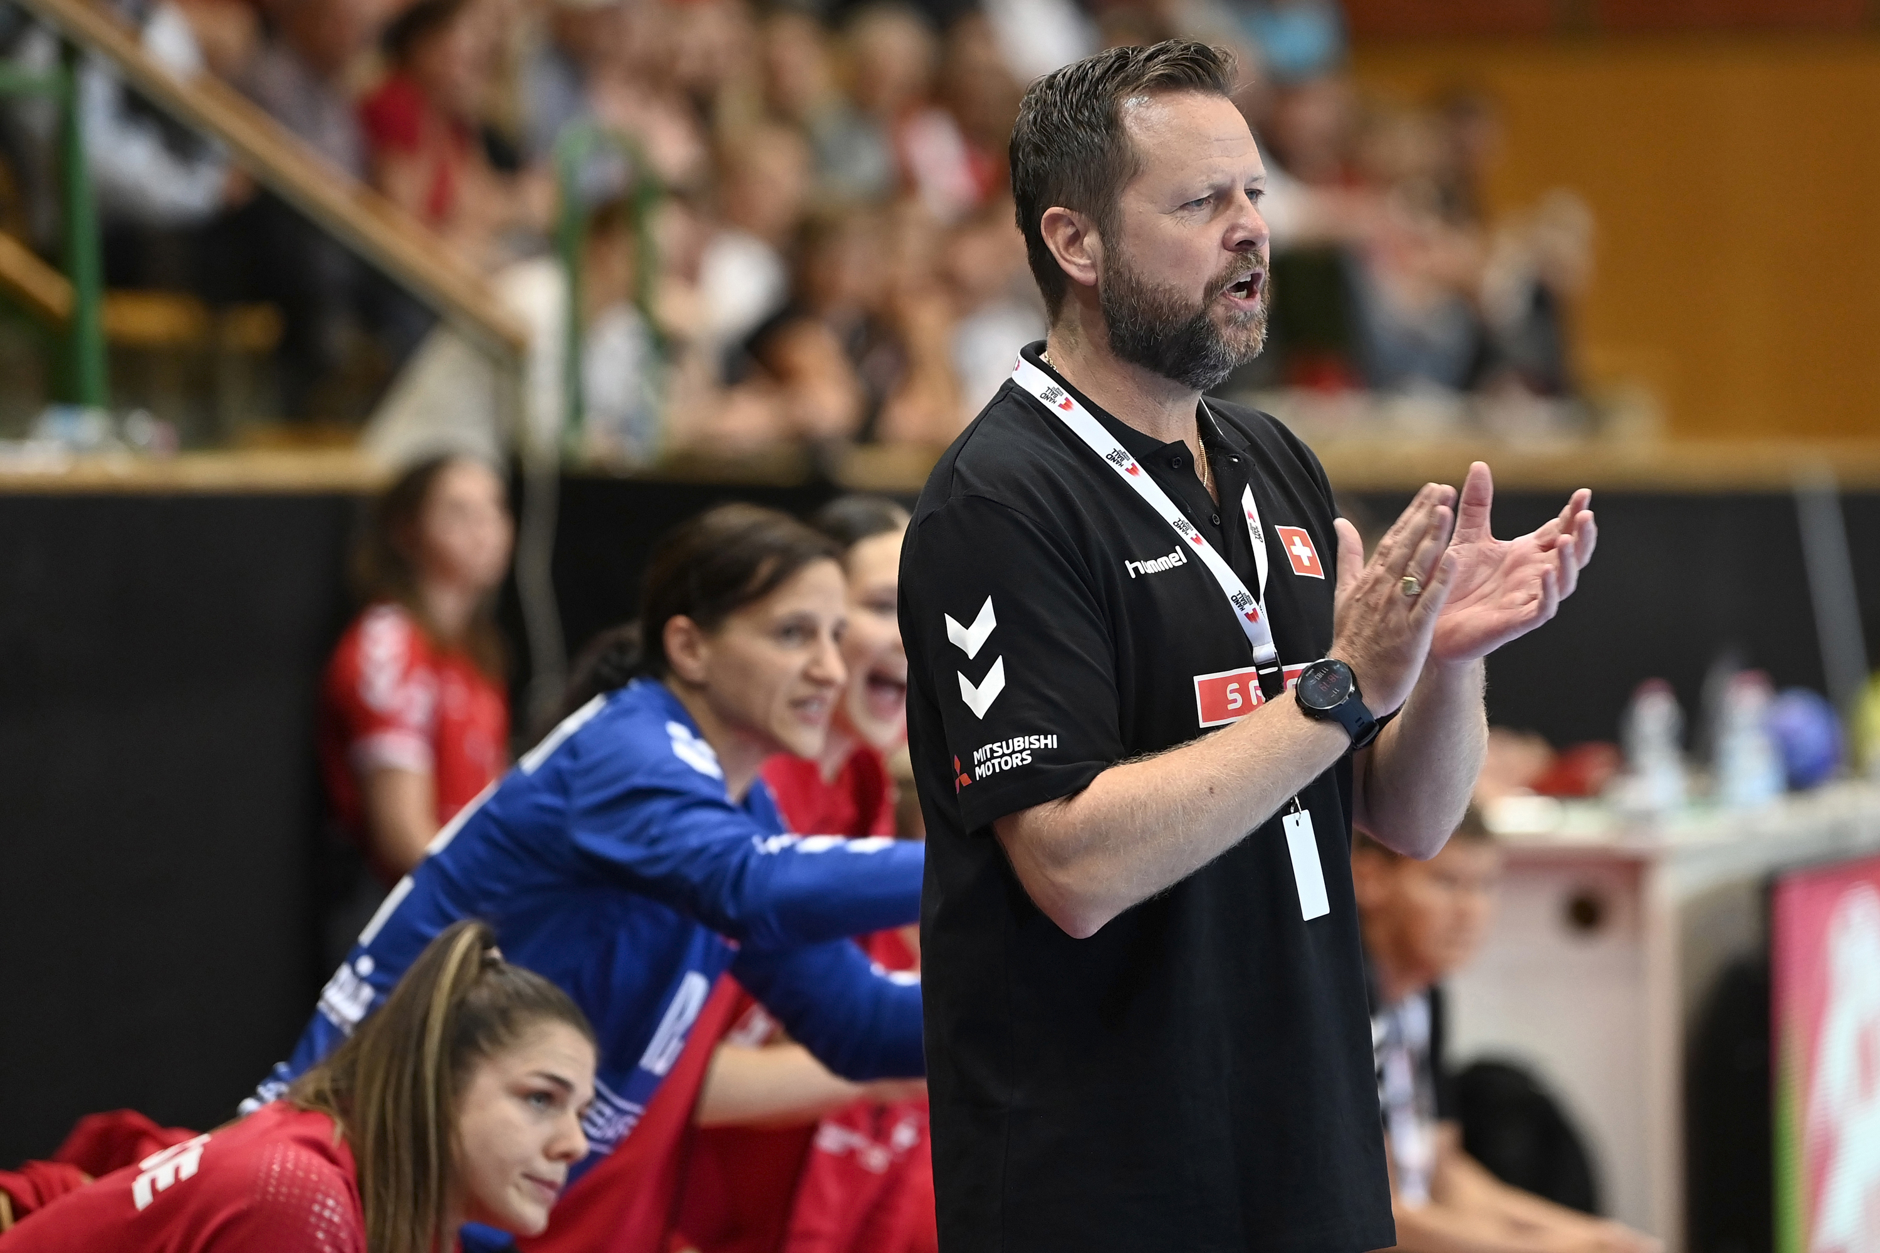 Gelungener Einstand: Knut Ove Joa, neuer Nationaltrainer der Schweizerinnen